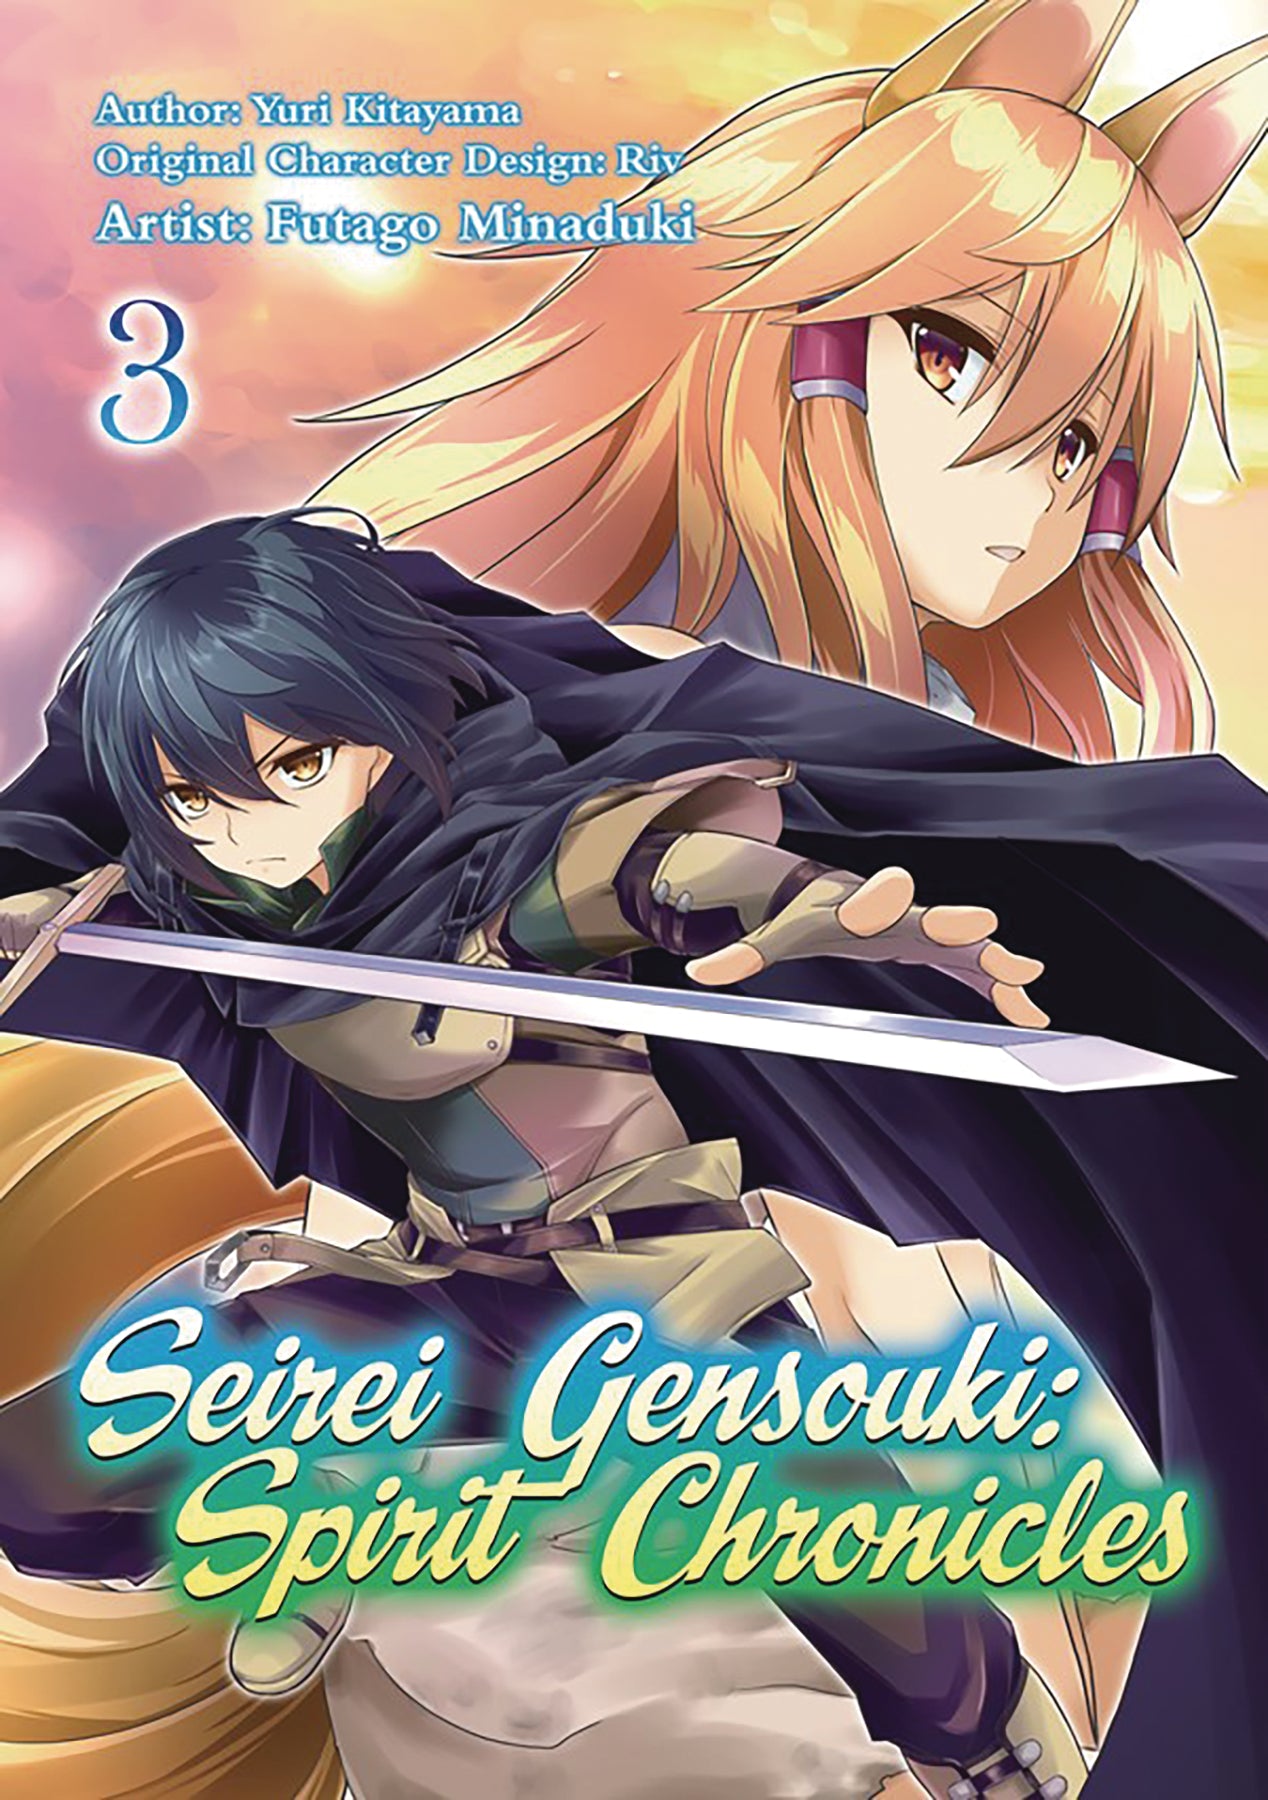 Seirei Gensouki: Spirit Chronicles Novel Omnibus Volume 4